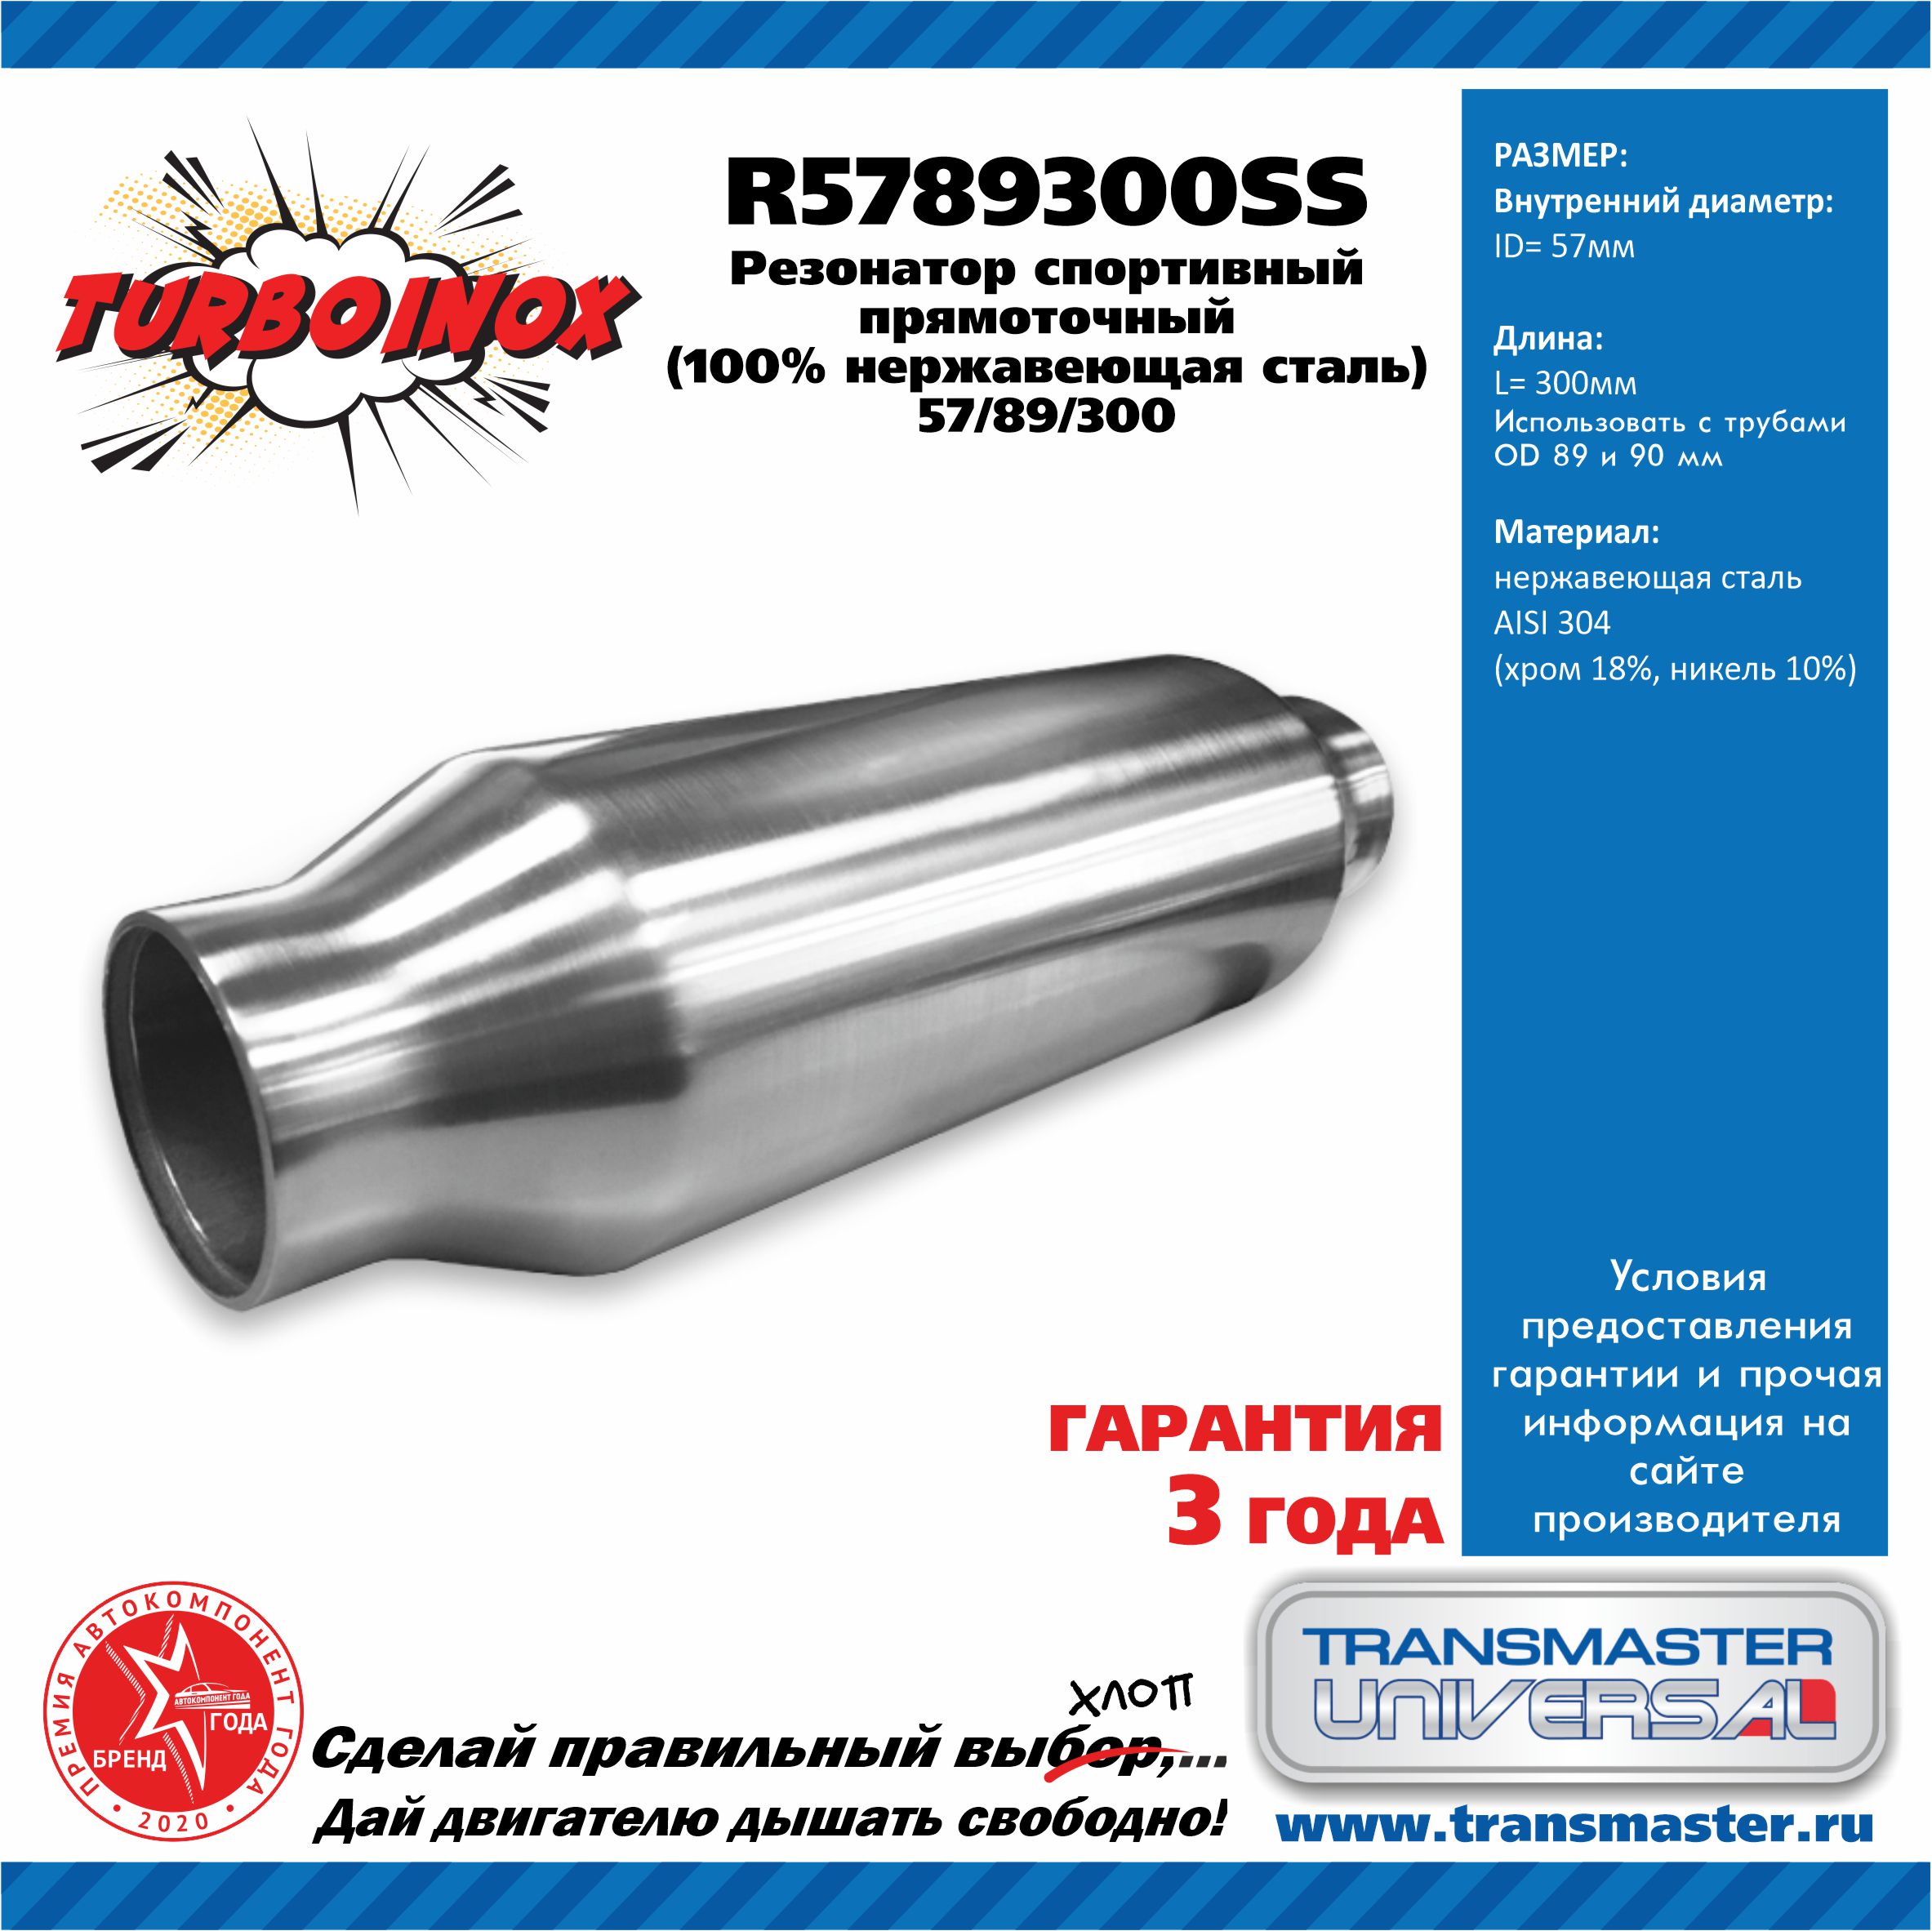 Резонатор спортивный прямоточный серия turboinox (100% нержавеющая сталь) - TRANSMASTER UNIVERSAL R5789300SS